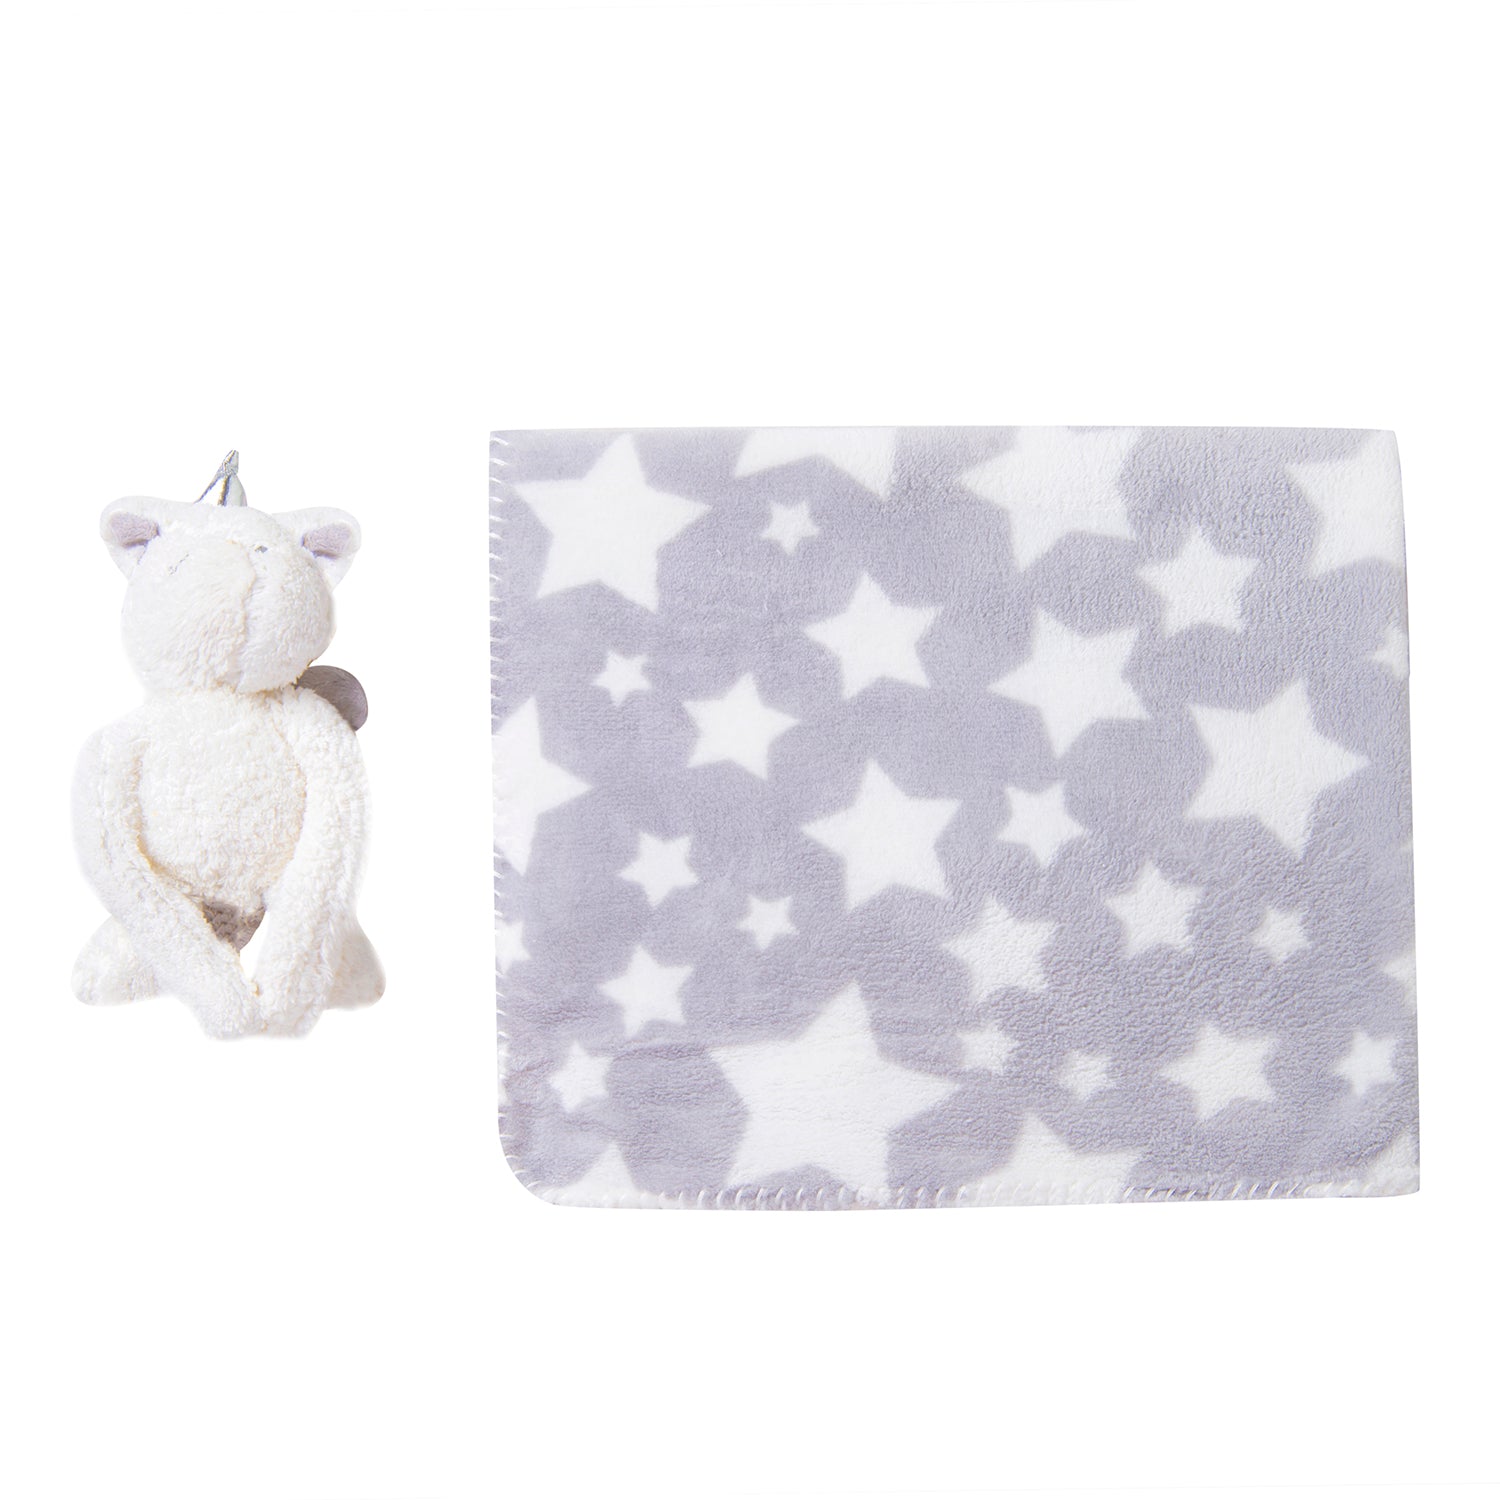 Star Unicorn Soft Cozy Plush Toy Blanket Grey - Baby Moo